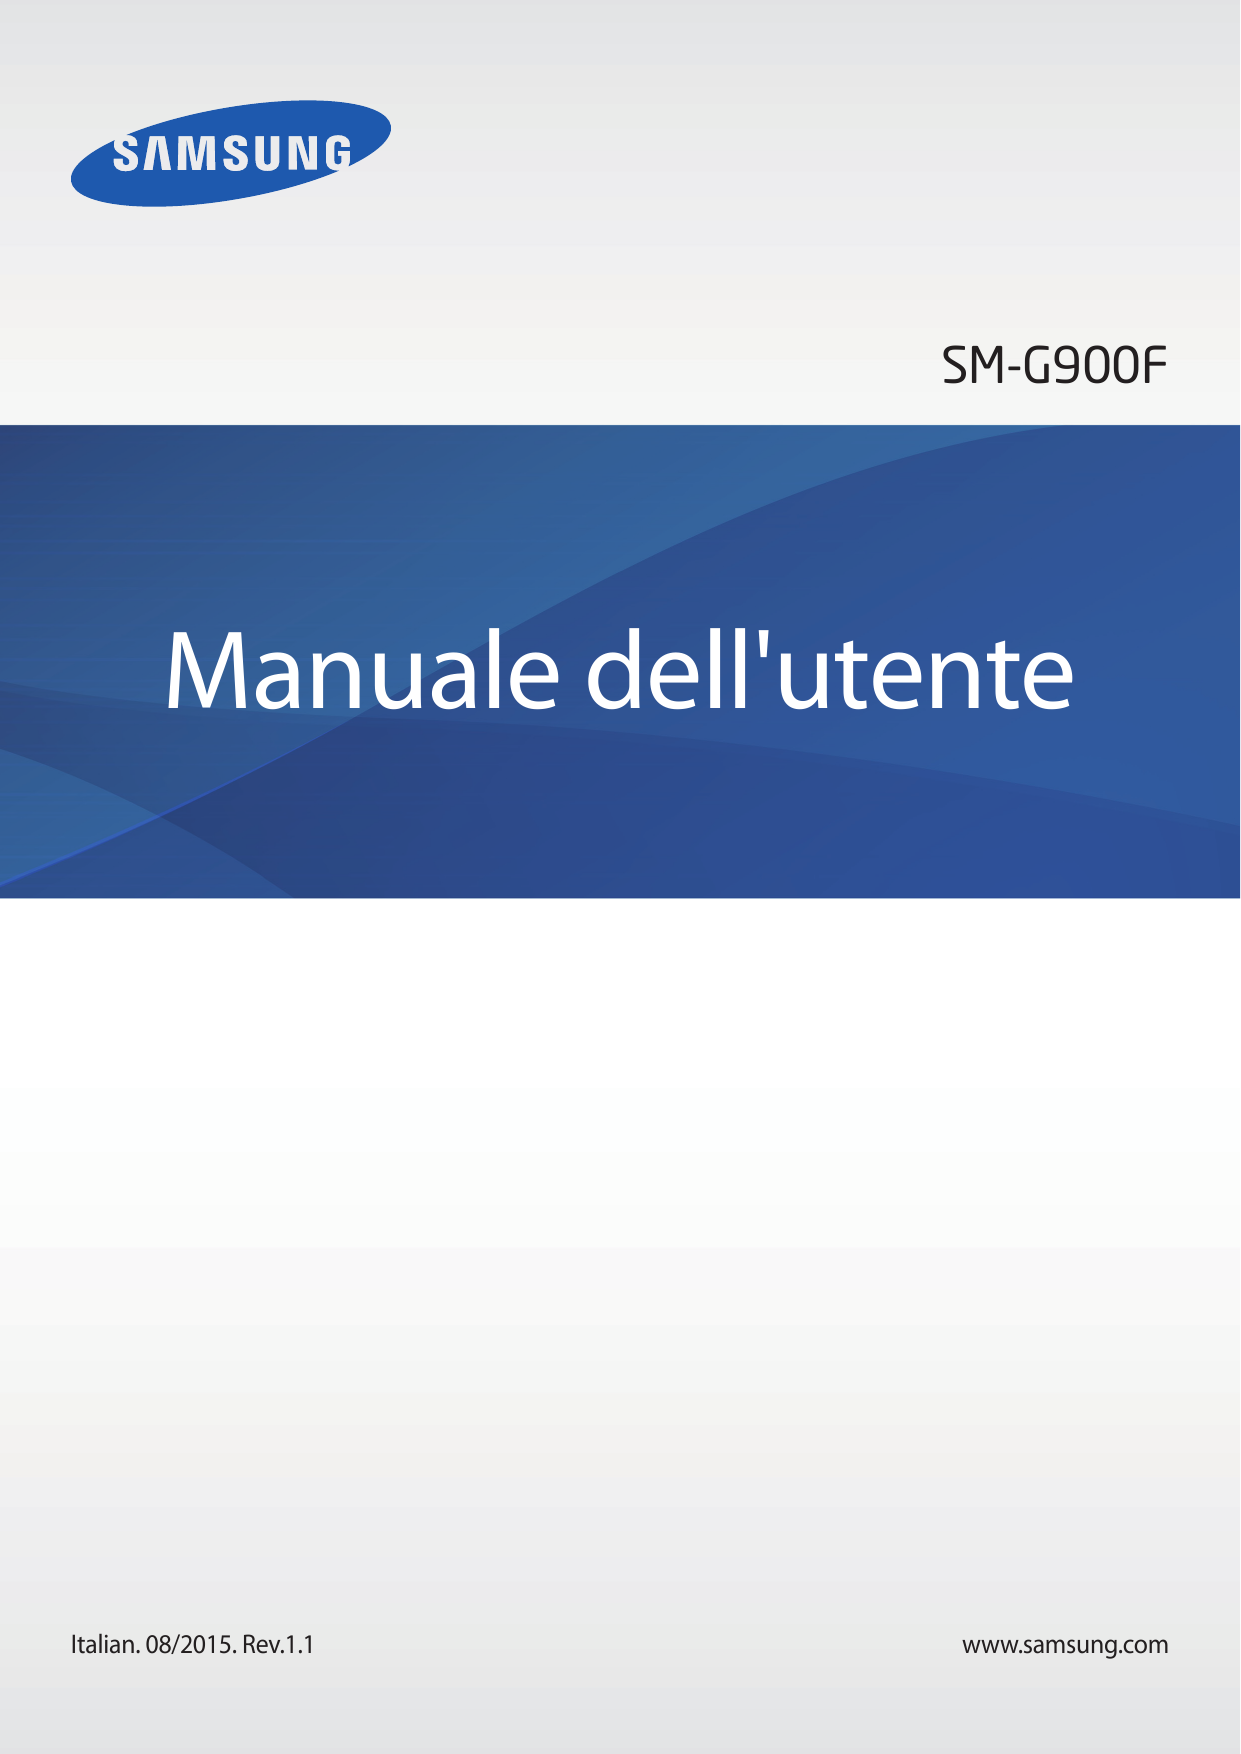 SM-G900FManuale dell'utenteItalian. 08/2015. Rev.1.1www.samsung.com